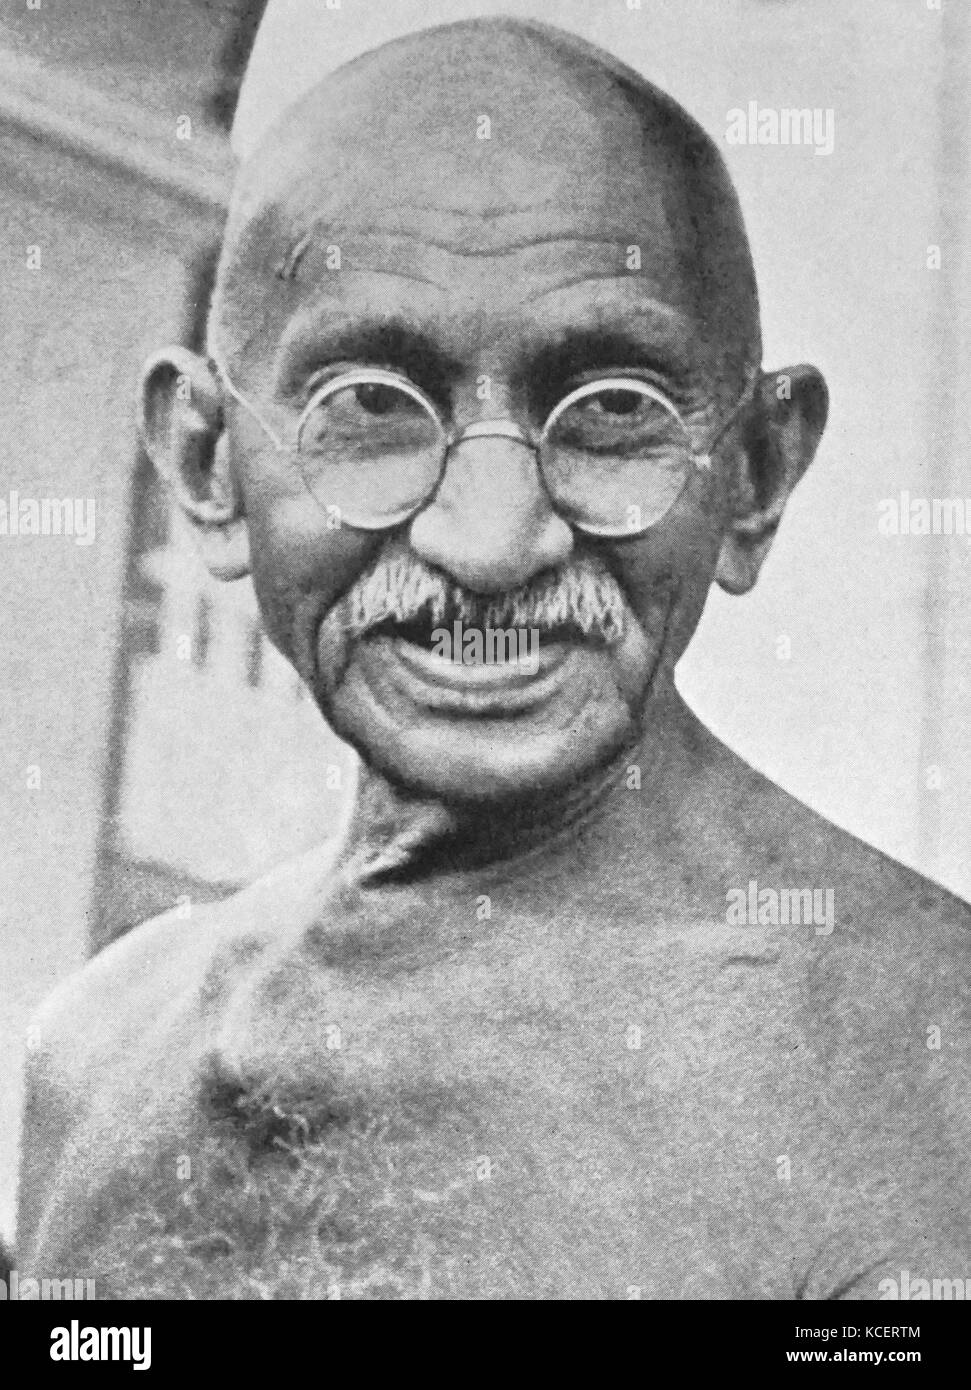 Mohandas Karamchand Gandhi (2 de octubre de 1869 - 30 de enero de 1948). Líder preeminente del movimiento de independencia de la India, en British-gobernó la India. Emplear la desobediencia civil no violenta, Gandhi condujo a la India a la independencia e inspiró los movimientos por los derechos civiles y la libertad en todo el mundo. Foto de stock